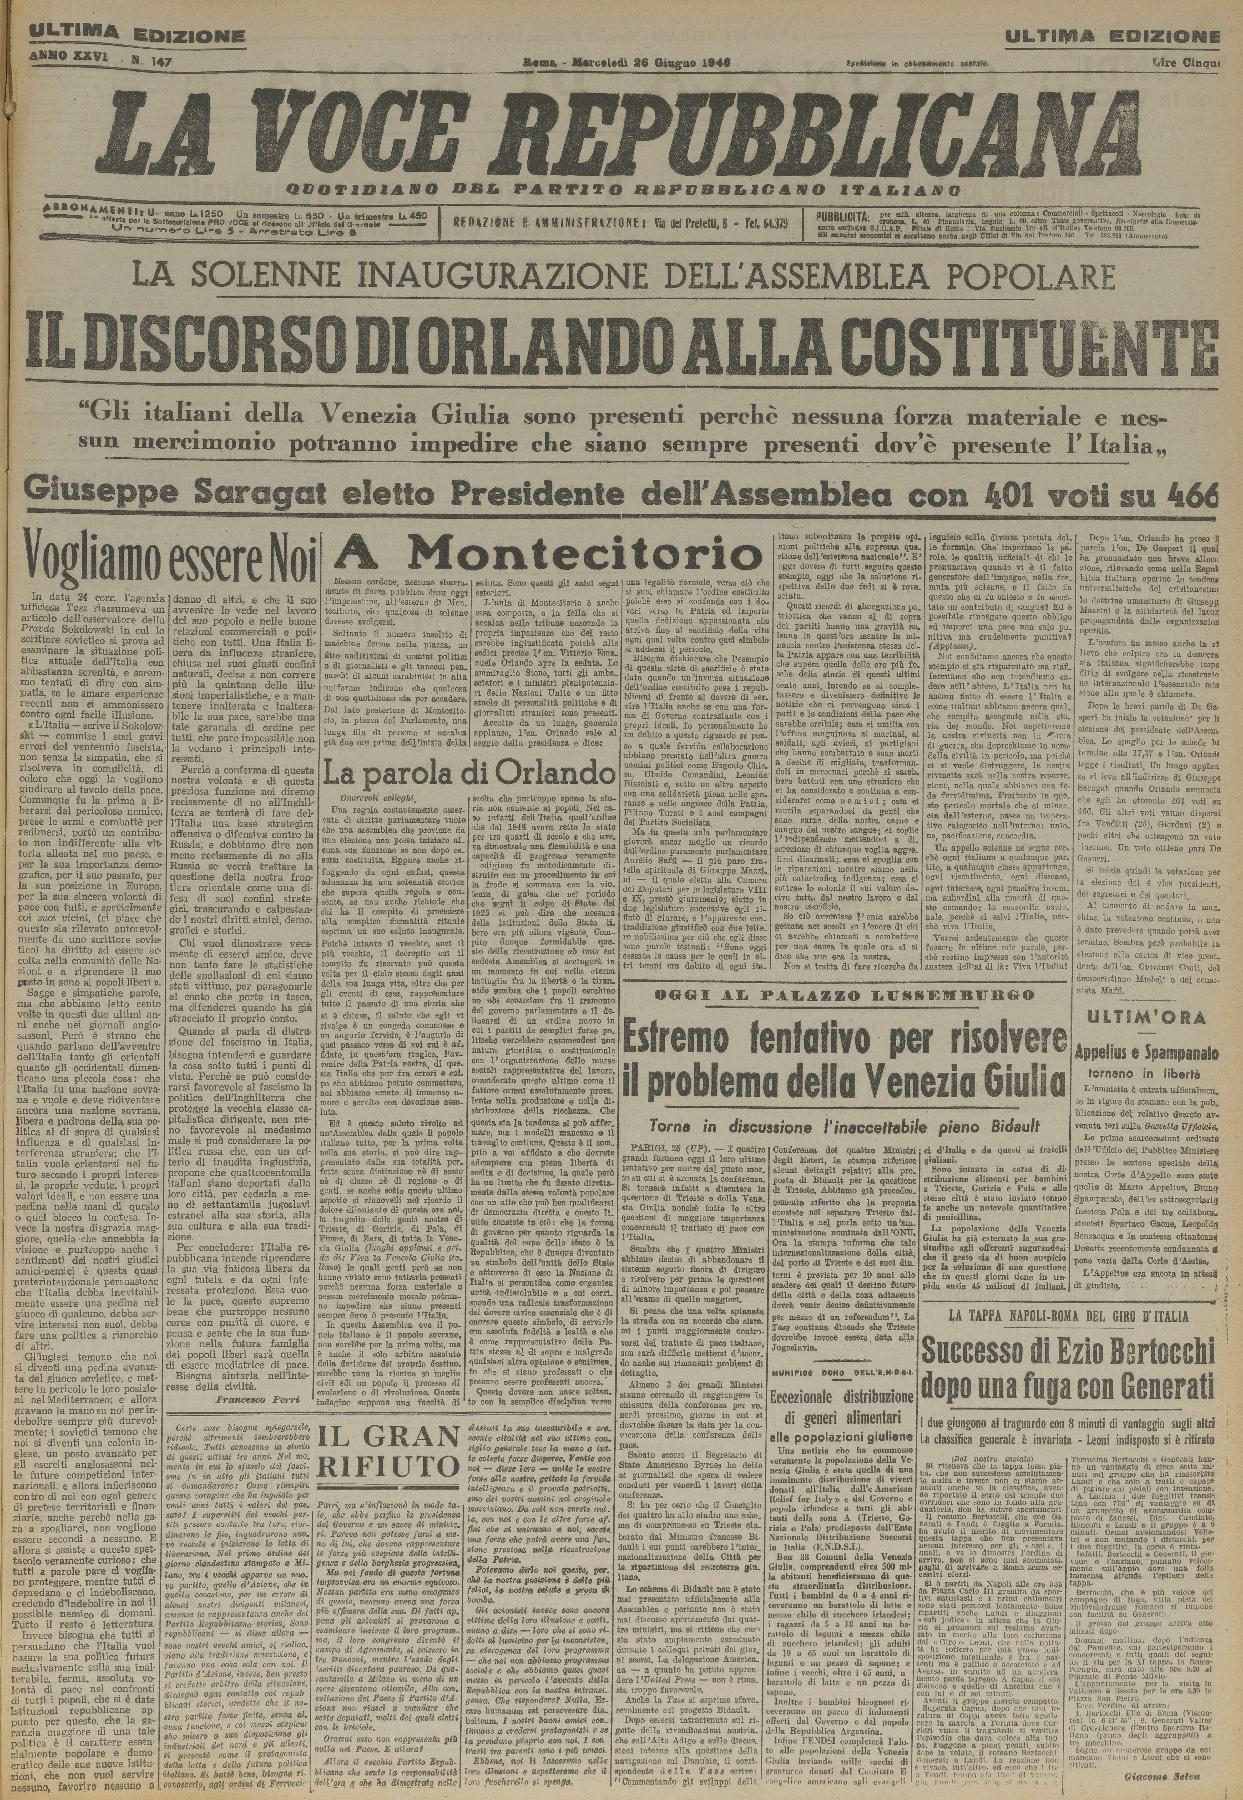 26 giugno 1946 - Prima pagina del quotidiano "La voce repubblicana".